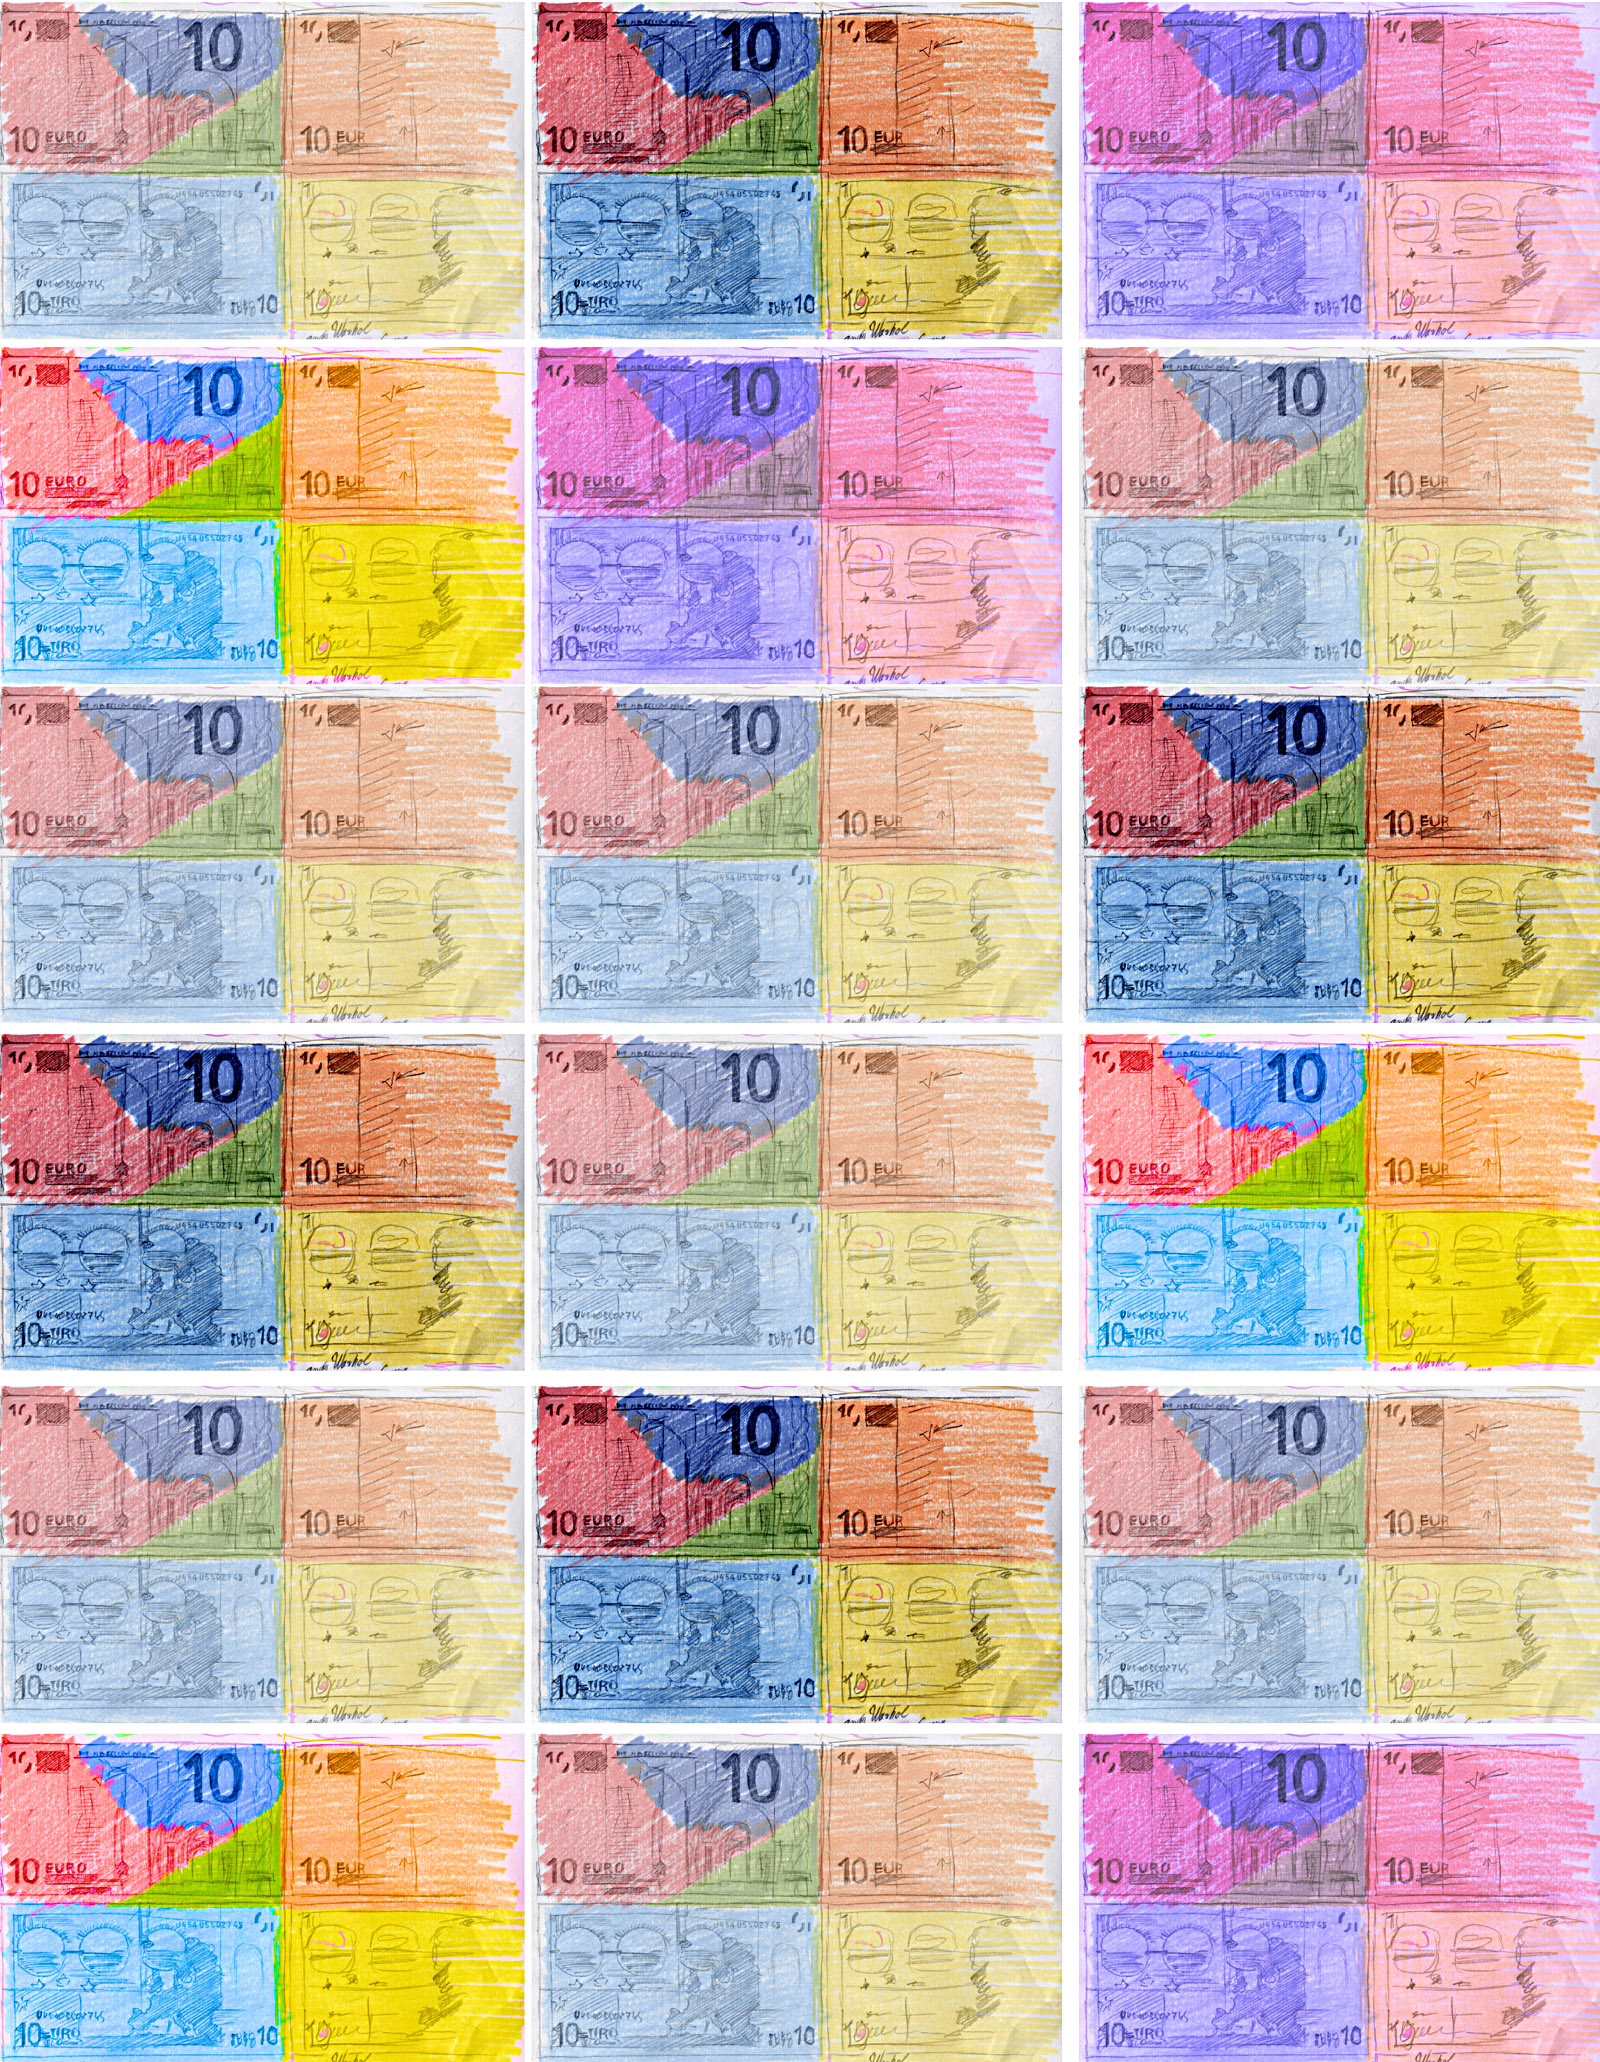 Marcellus M. Menke: 72 Zehn-Euro-Scheine, nicht immer vollständig wiedergegeben, gescannte Zeichnung und digitale Montage, Köln 2012. Hommage à: Andy Warhol, 80 Zweidollarscheine (Vorder- und Rückseite), 1962